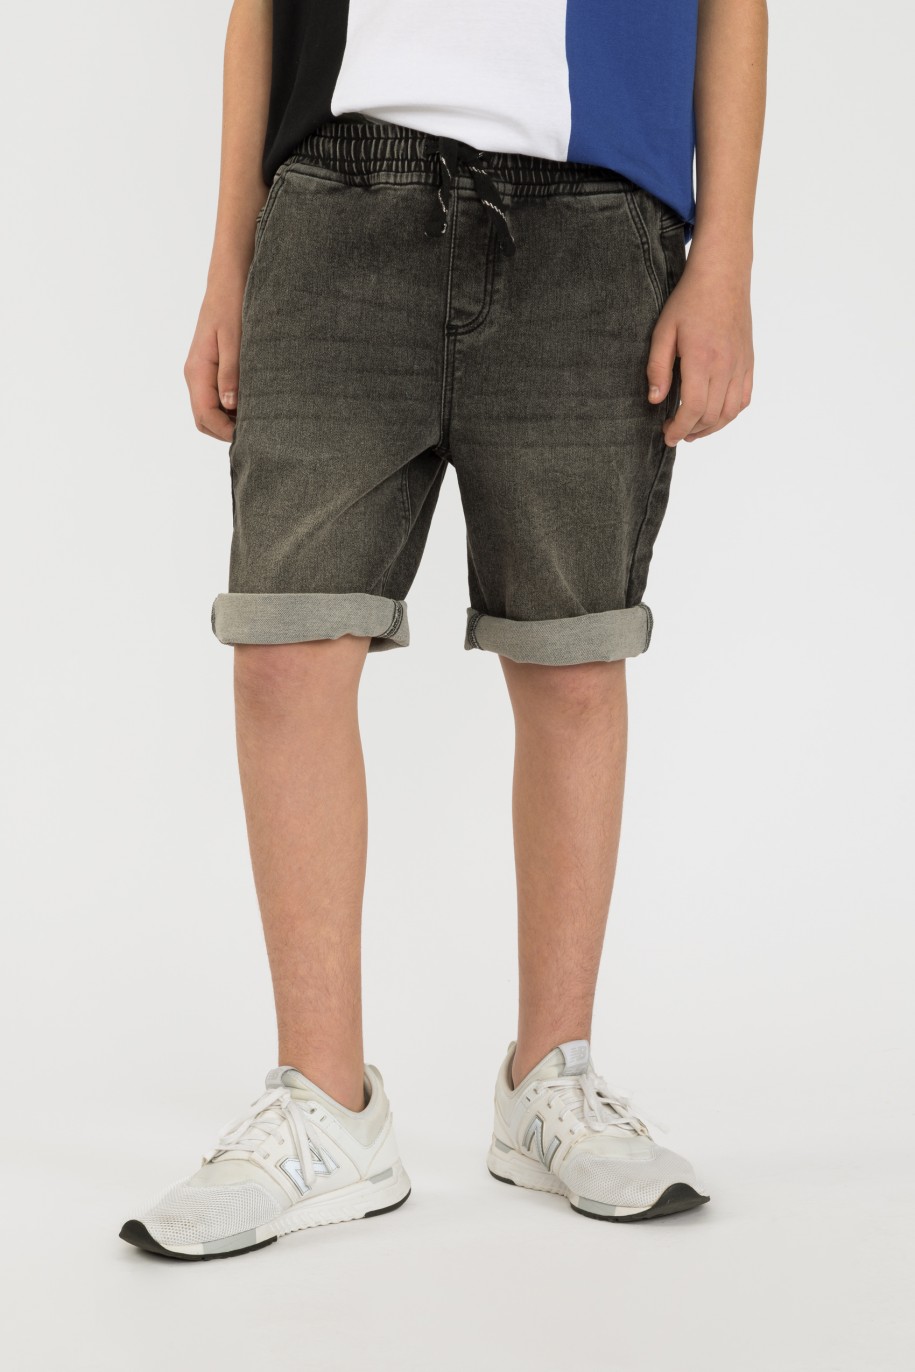 Krótkie szare jeansowe spodenki dla chłopaka - 41198